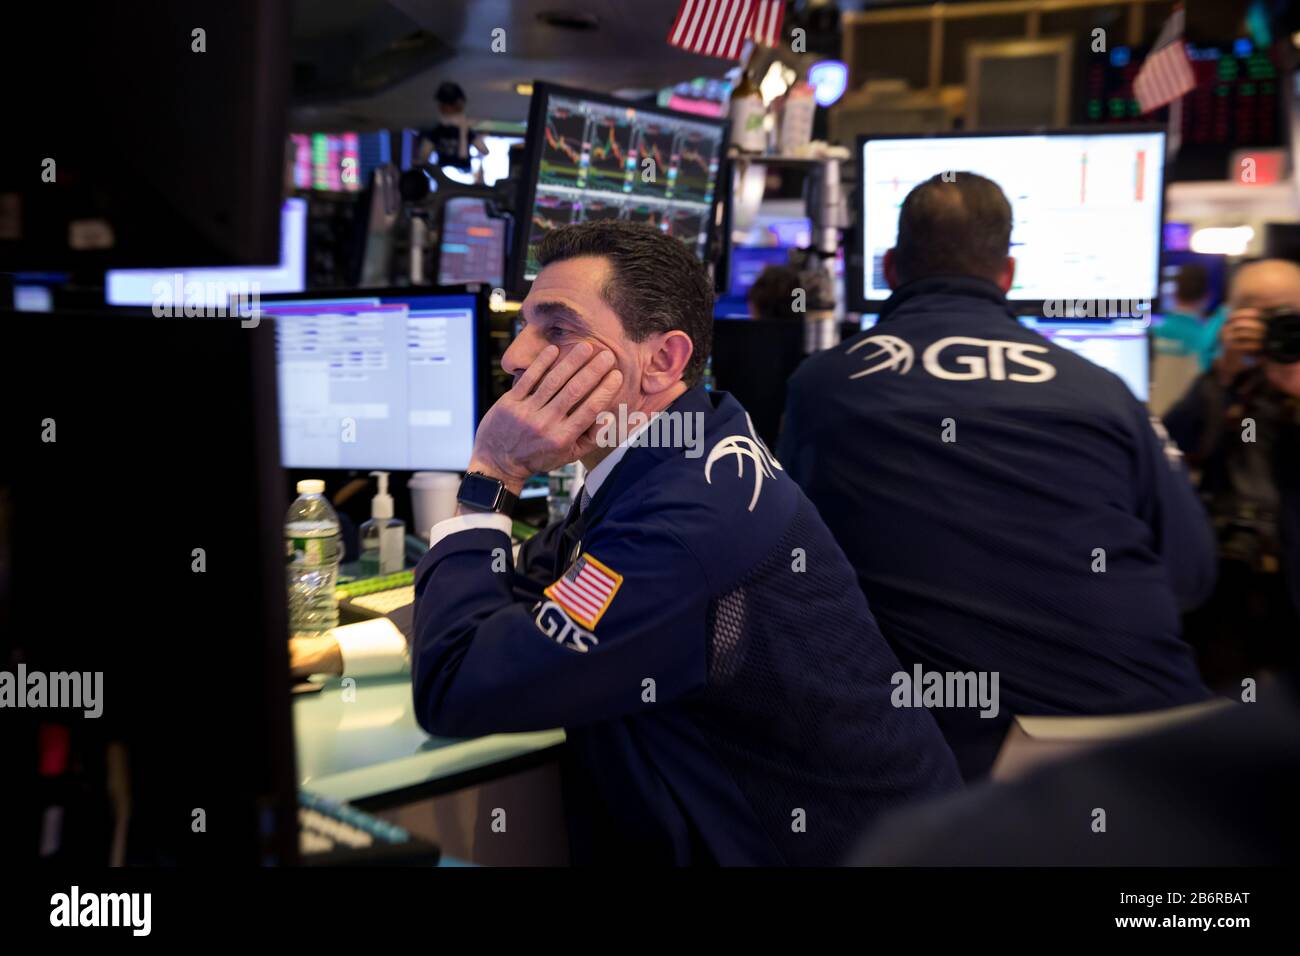 New York, Stati Uniti. 11th Mar, 2020. I commercianti lavorano alla Borsa di New York (NYSE) a New York, gli Stati Uniti, l'11 marzo 2020. La Dow Jones Industrial Average ha registrato un picco di 1.464,94 punti, pari al 5,86%, a 23.553,22. L'indice delle 30 azioni è sceso in un territorio di mercato dell'orso, in diminuzione di oltre il 20% rispetto alla chiusura record del mese scorso. La S&P 500 è diminuita di 140,85 punti, pari al 4,89%, per arrivare a 2.741,38. L'indice composito Nasdaq ha immerso 392,20 punti, ossia 4,70 per cento, a 7,952,05. Credito: Michael Nagle/Xinhua/Alamy Live News Foto Stock